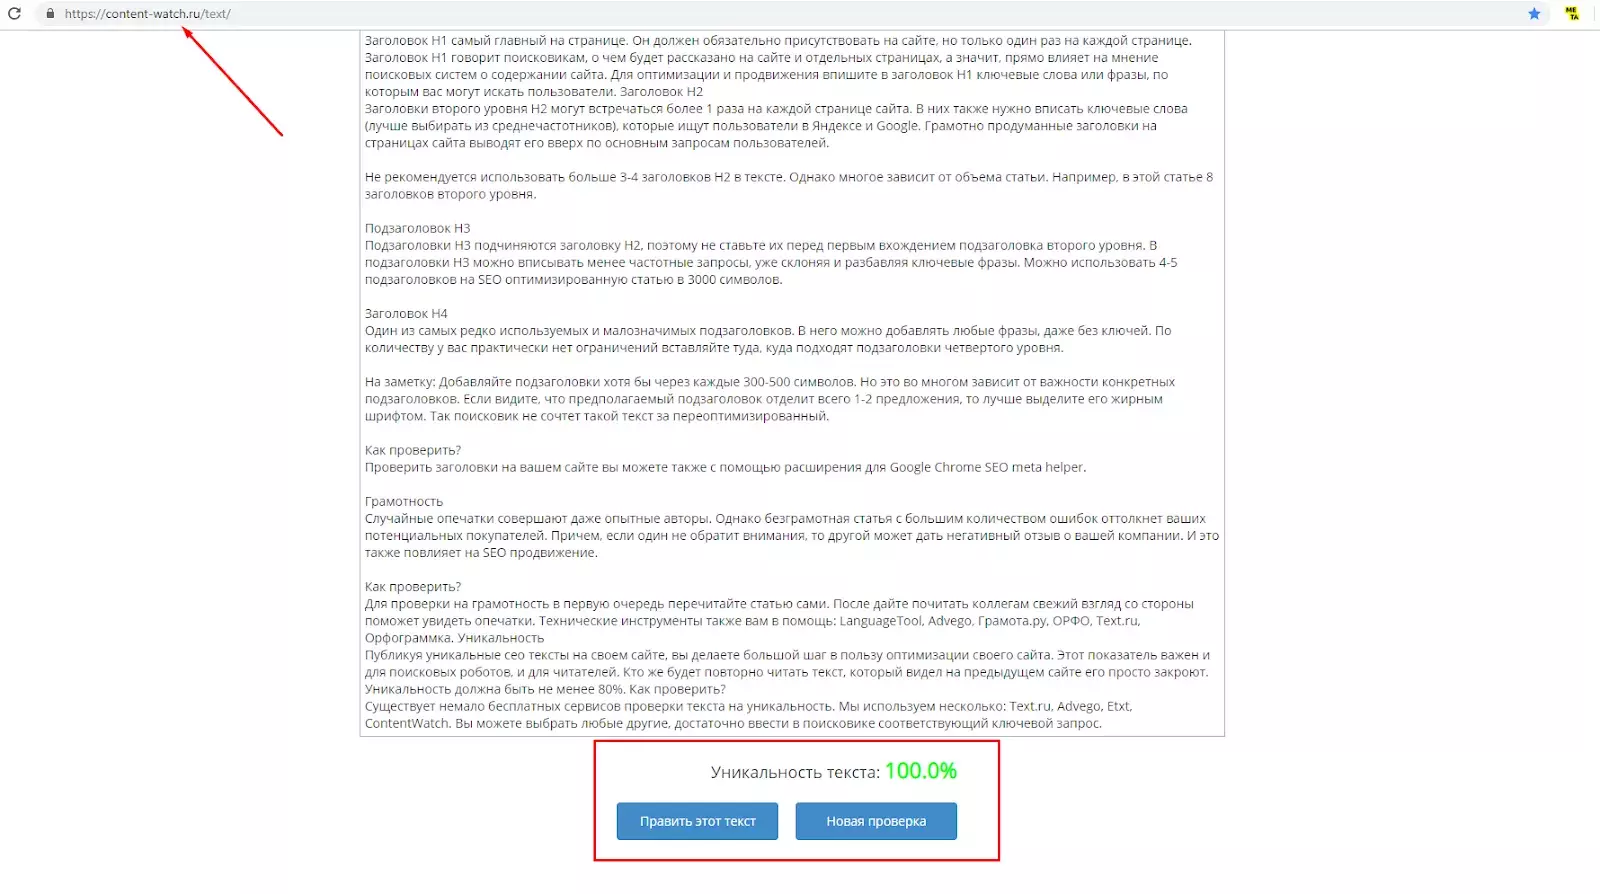 Пример проверки текста на уникальность по сервису ContentWatch